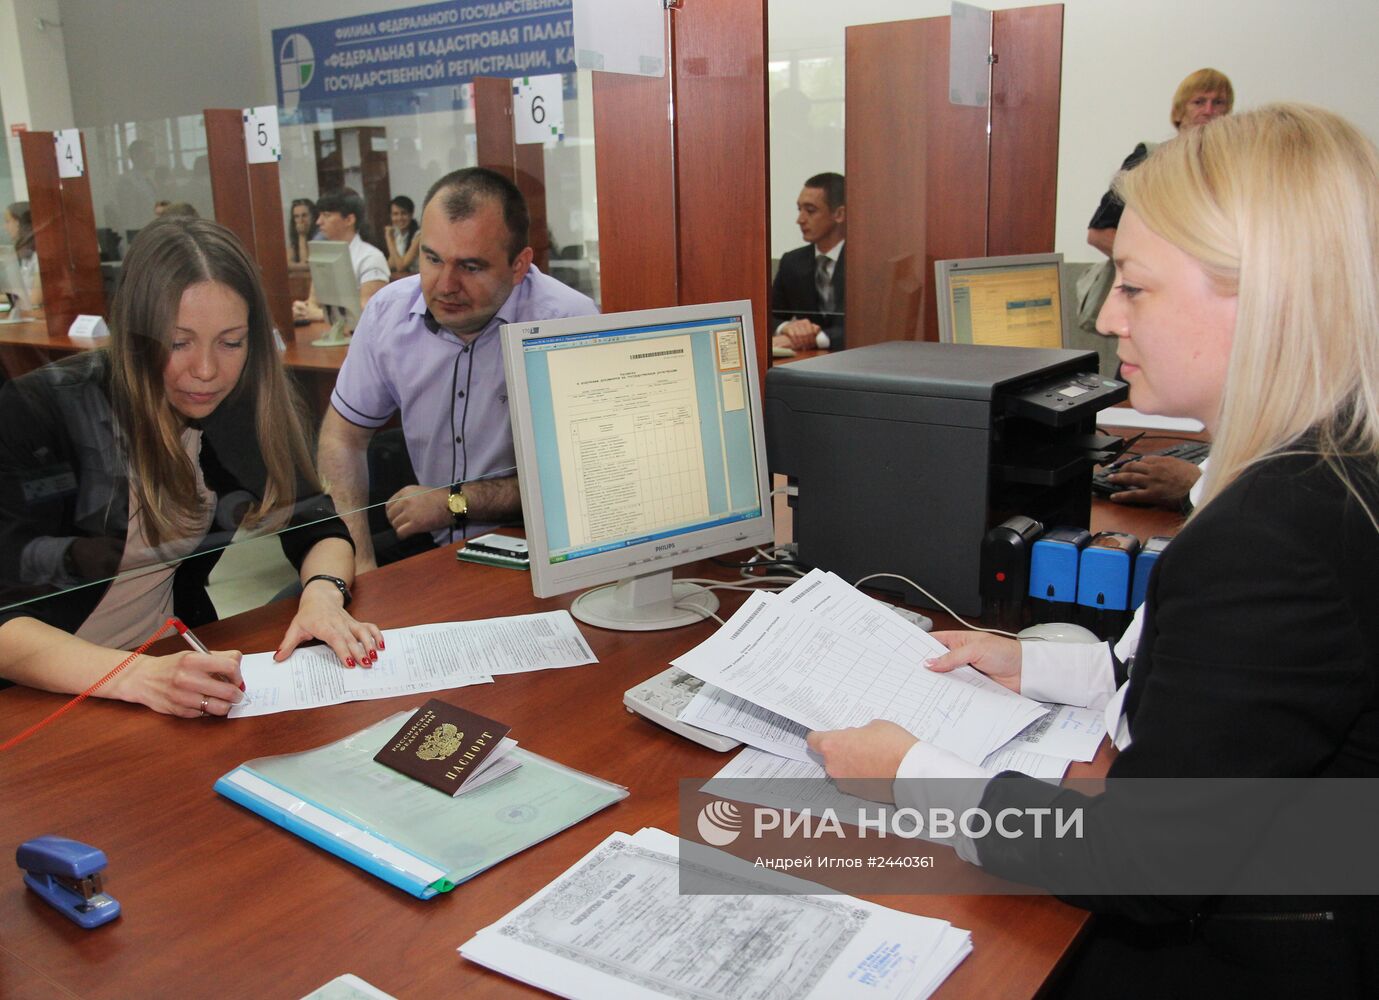 Открытие первого Республиканского центра по регистрации прав собственности на недвижимое имущество в системе Росреестра Российской Федерации